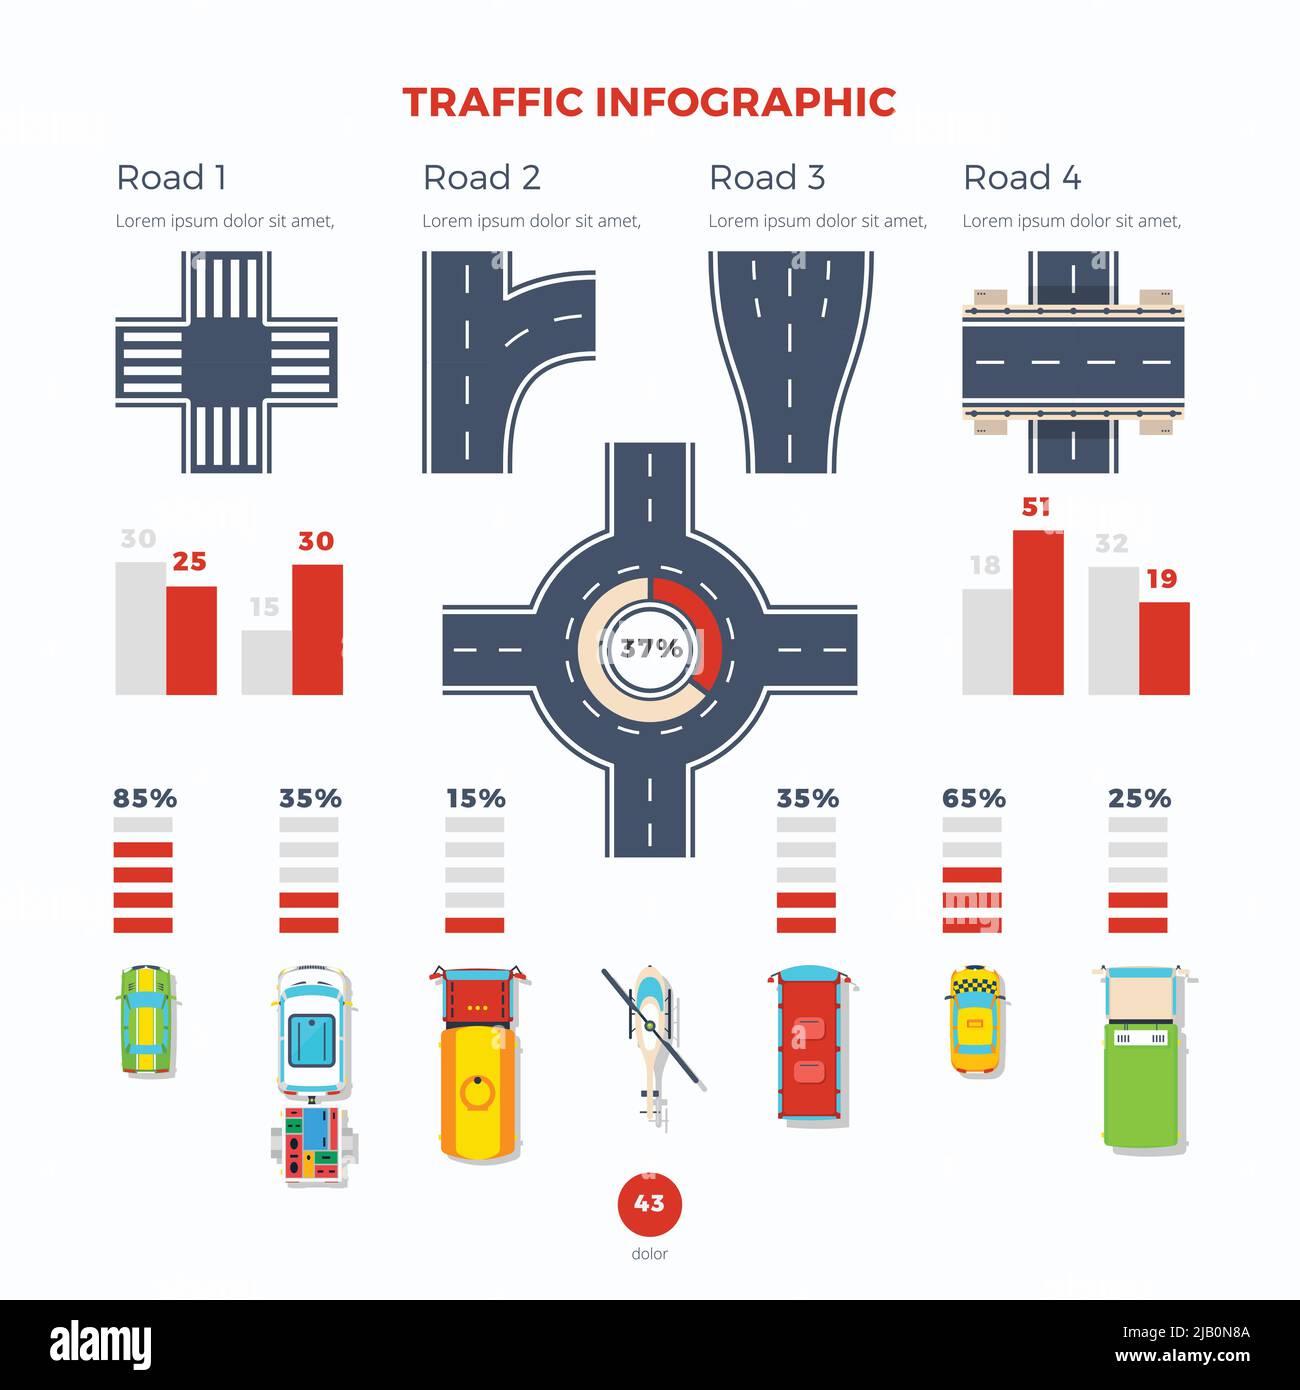 Infografica sul traffico con informazioni sui tipi di strade e incroci e statistiche sui diversi veicoli illustrazione vettoriale piatta Illustrazione Vettoriale